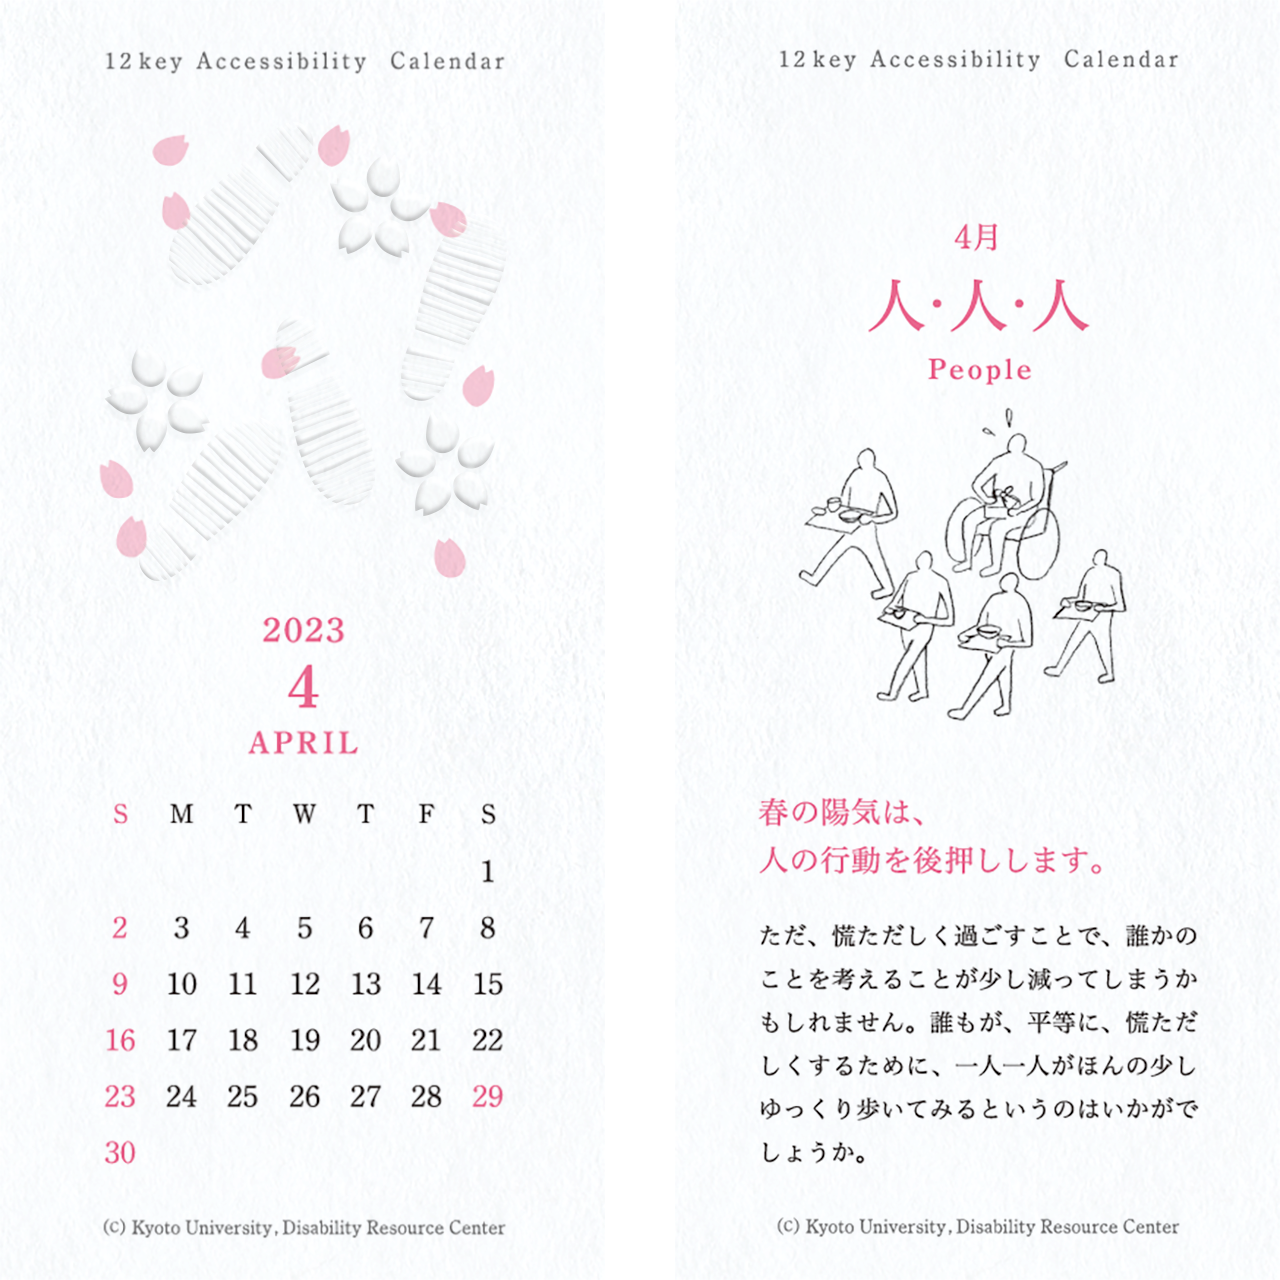 カレンダーの画像。表面：桜の花と行き交う足跡のイラストとカレンダー 裏面：「人・人・人」 トレイを持って移動する人と、弁当を持つ手が塞がって移動できない車椅子の人